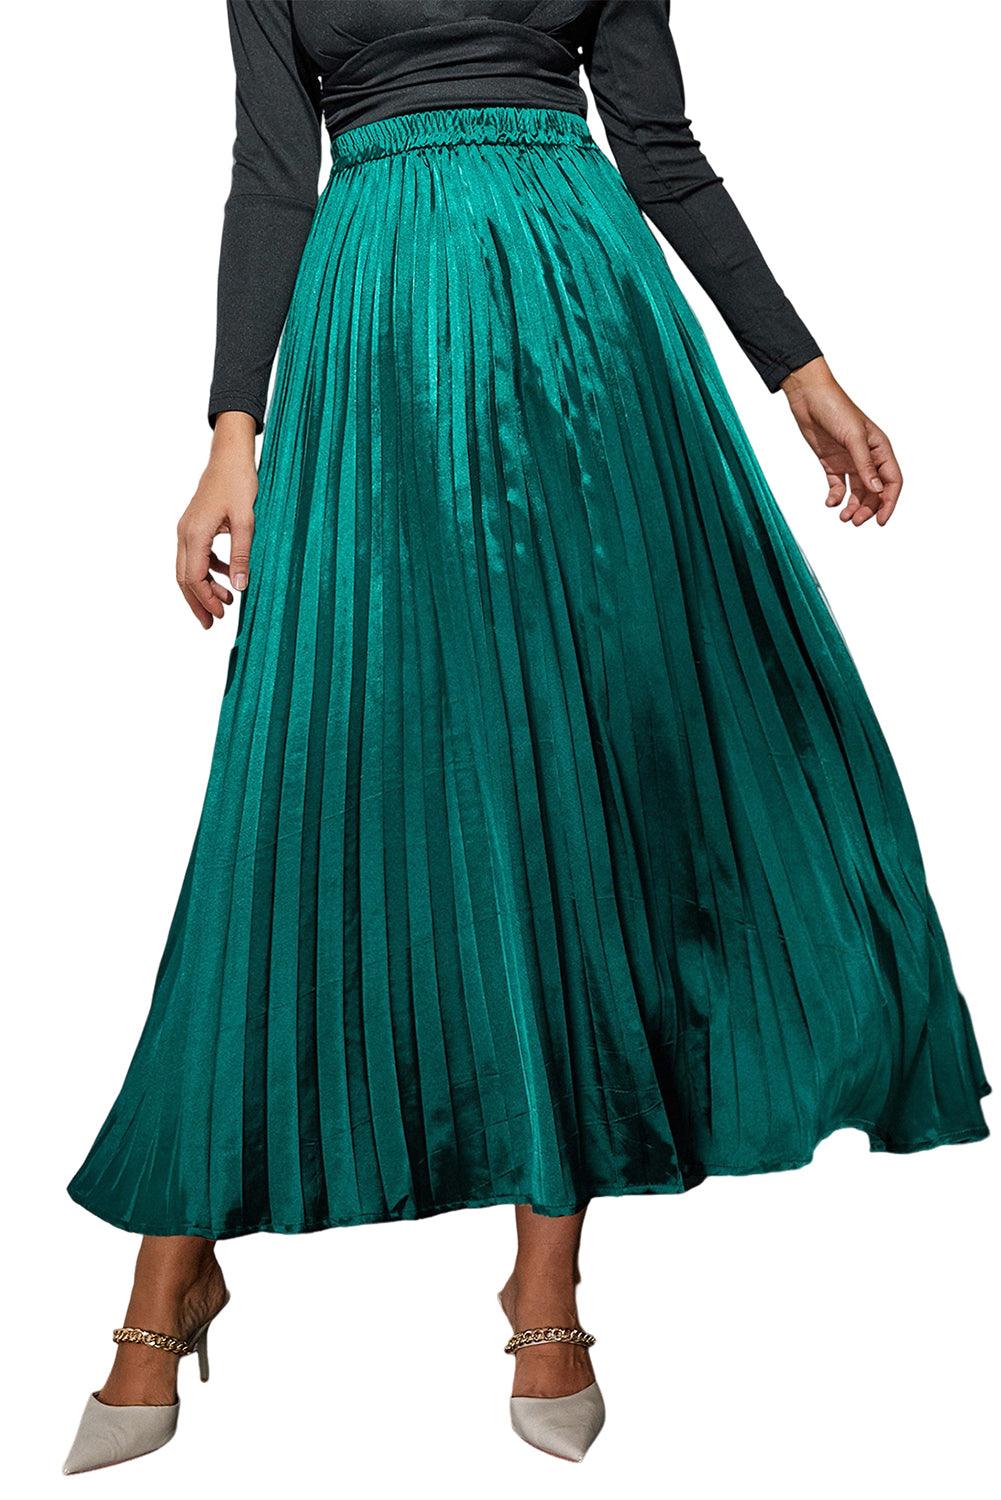 Blackish Green Satin Elastic Waist Pleated Maxi Skirt - L & M Kee, LLC